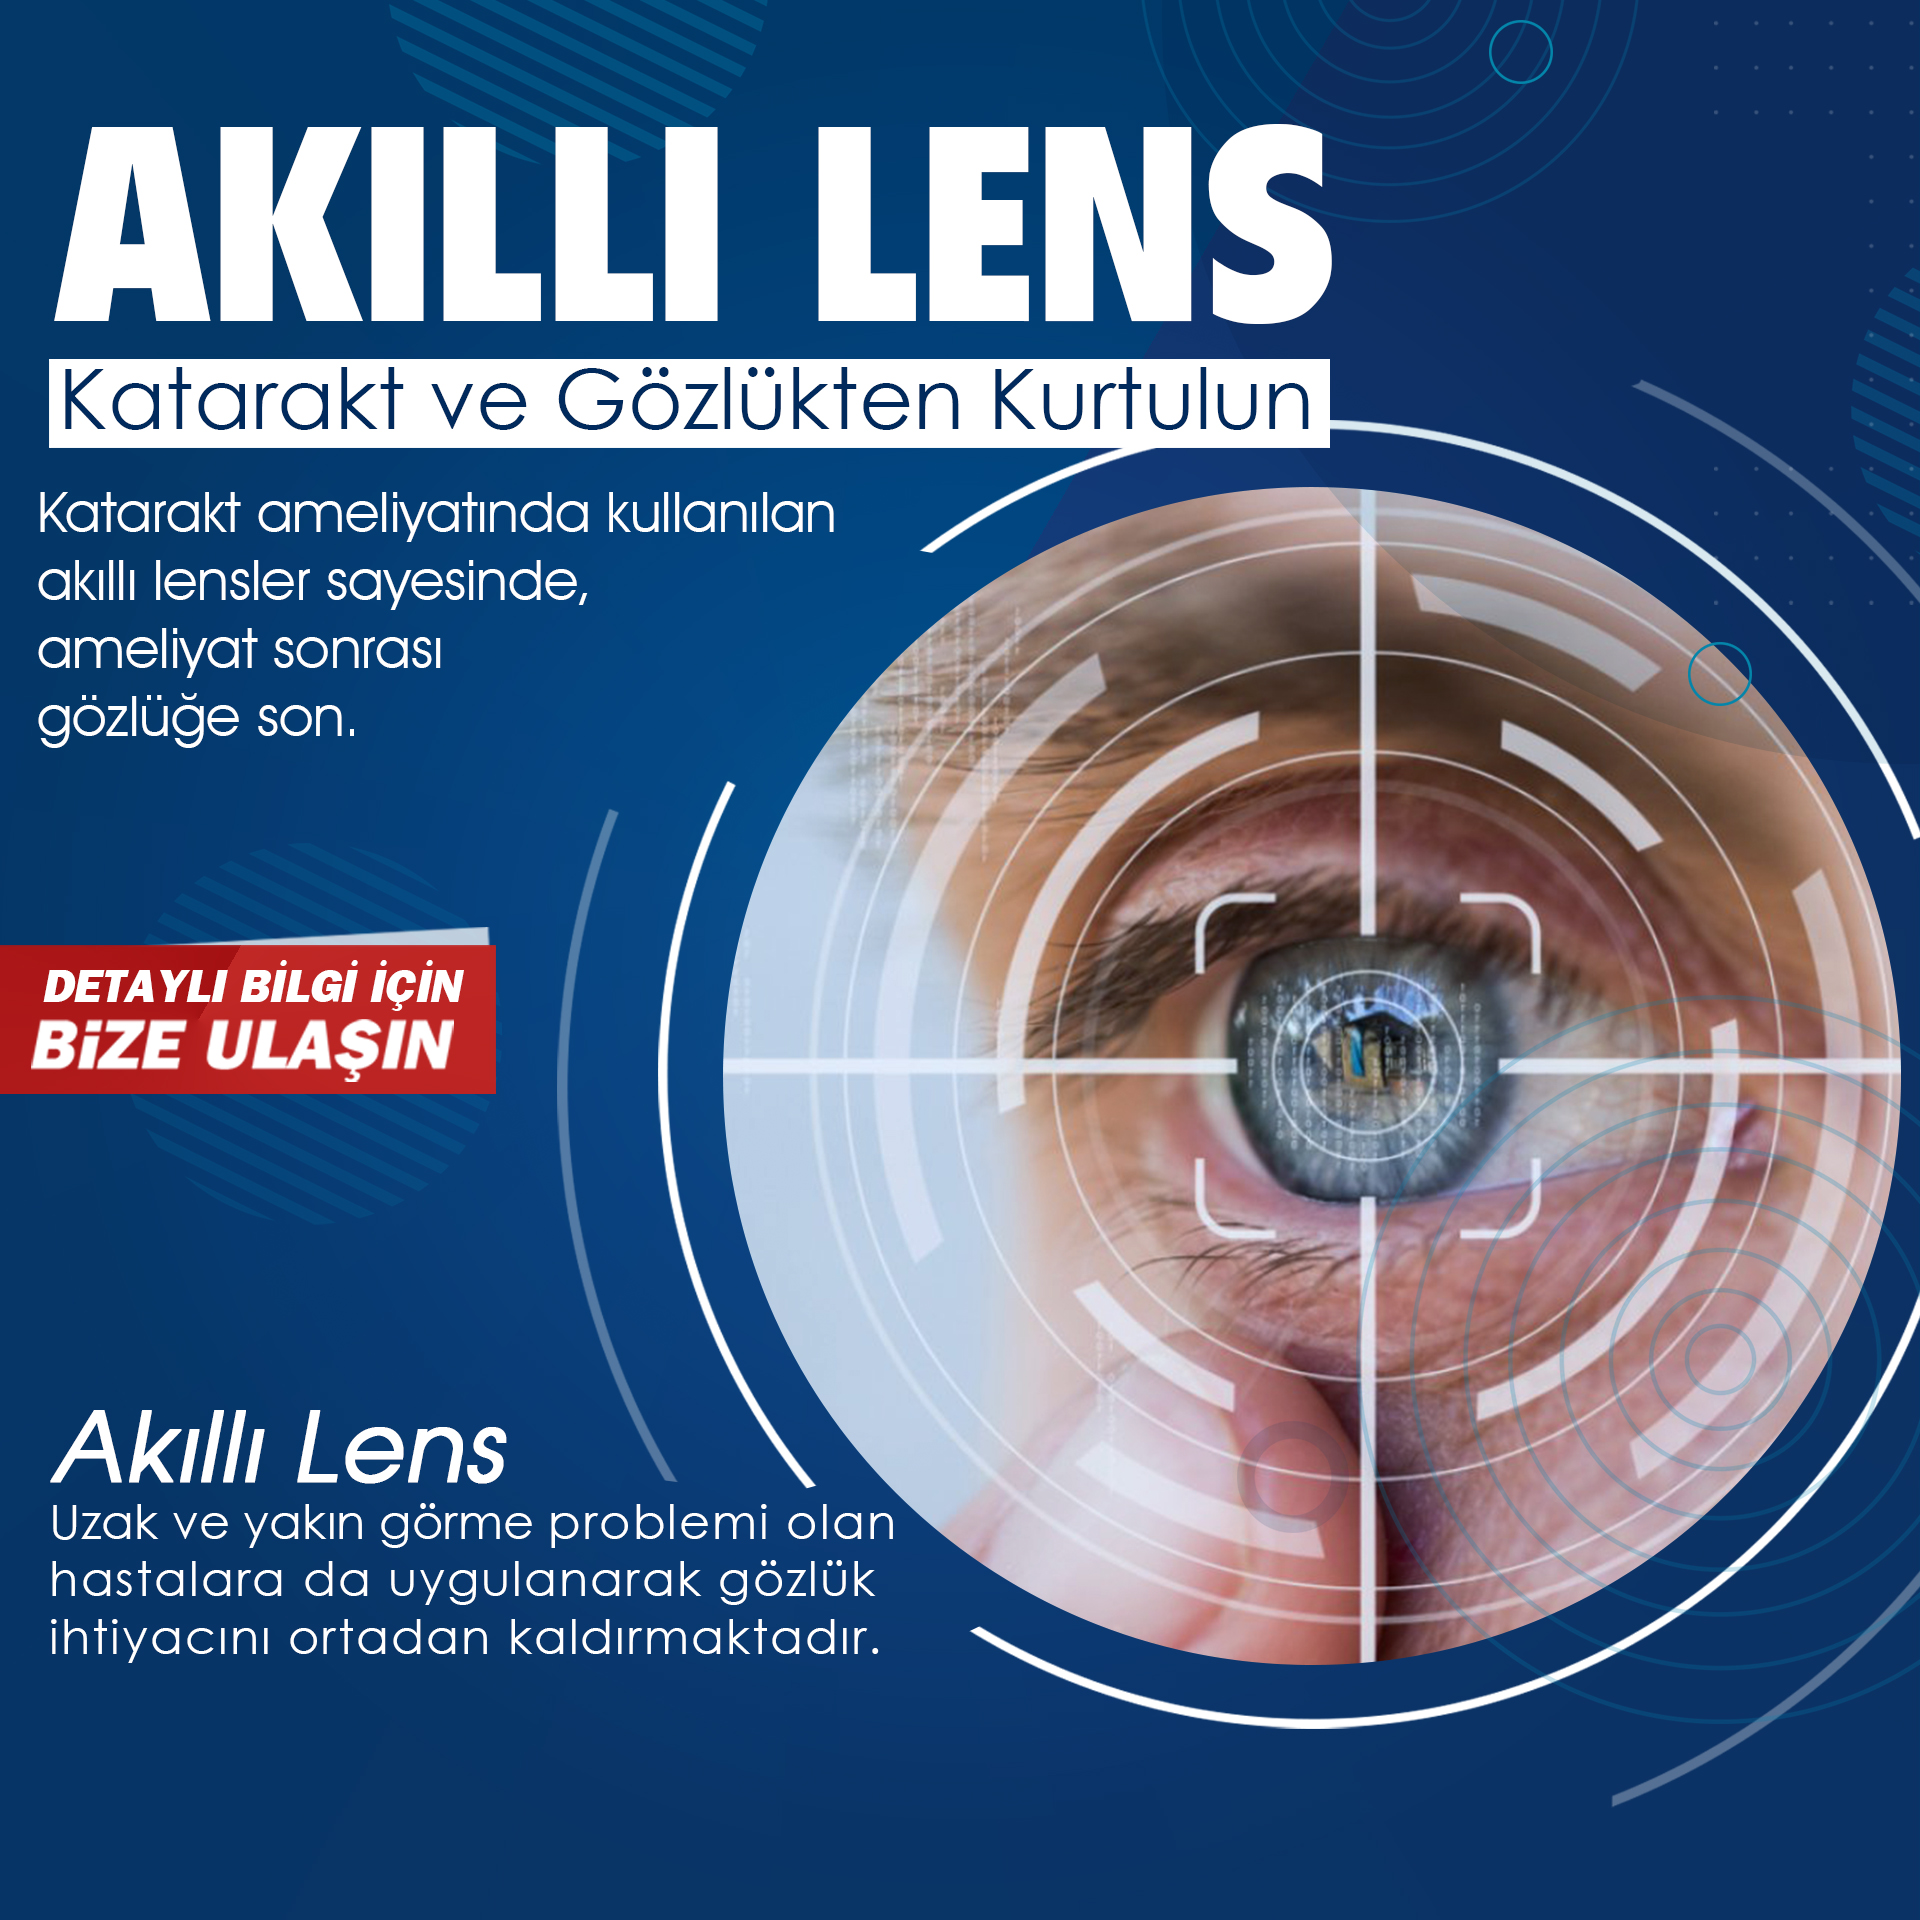 Akıllı Lens İle Katarakt ve Gözlükten Kurtulun